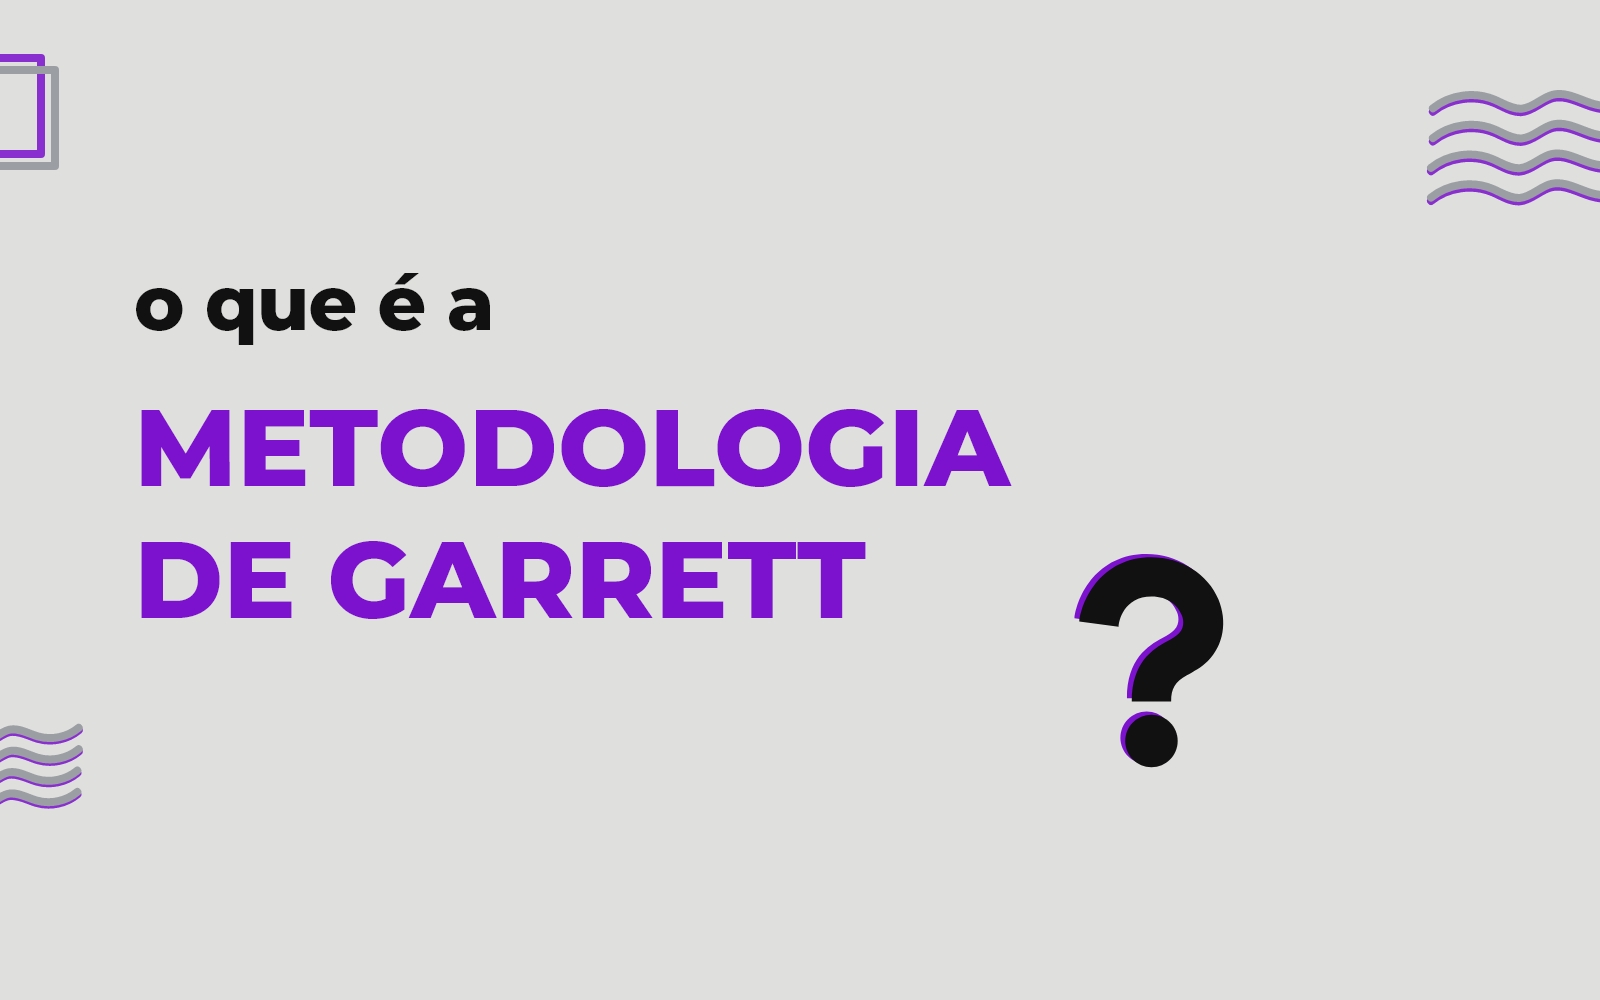 O que é a Metodologia de Garrett?